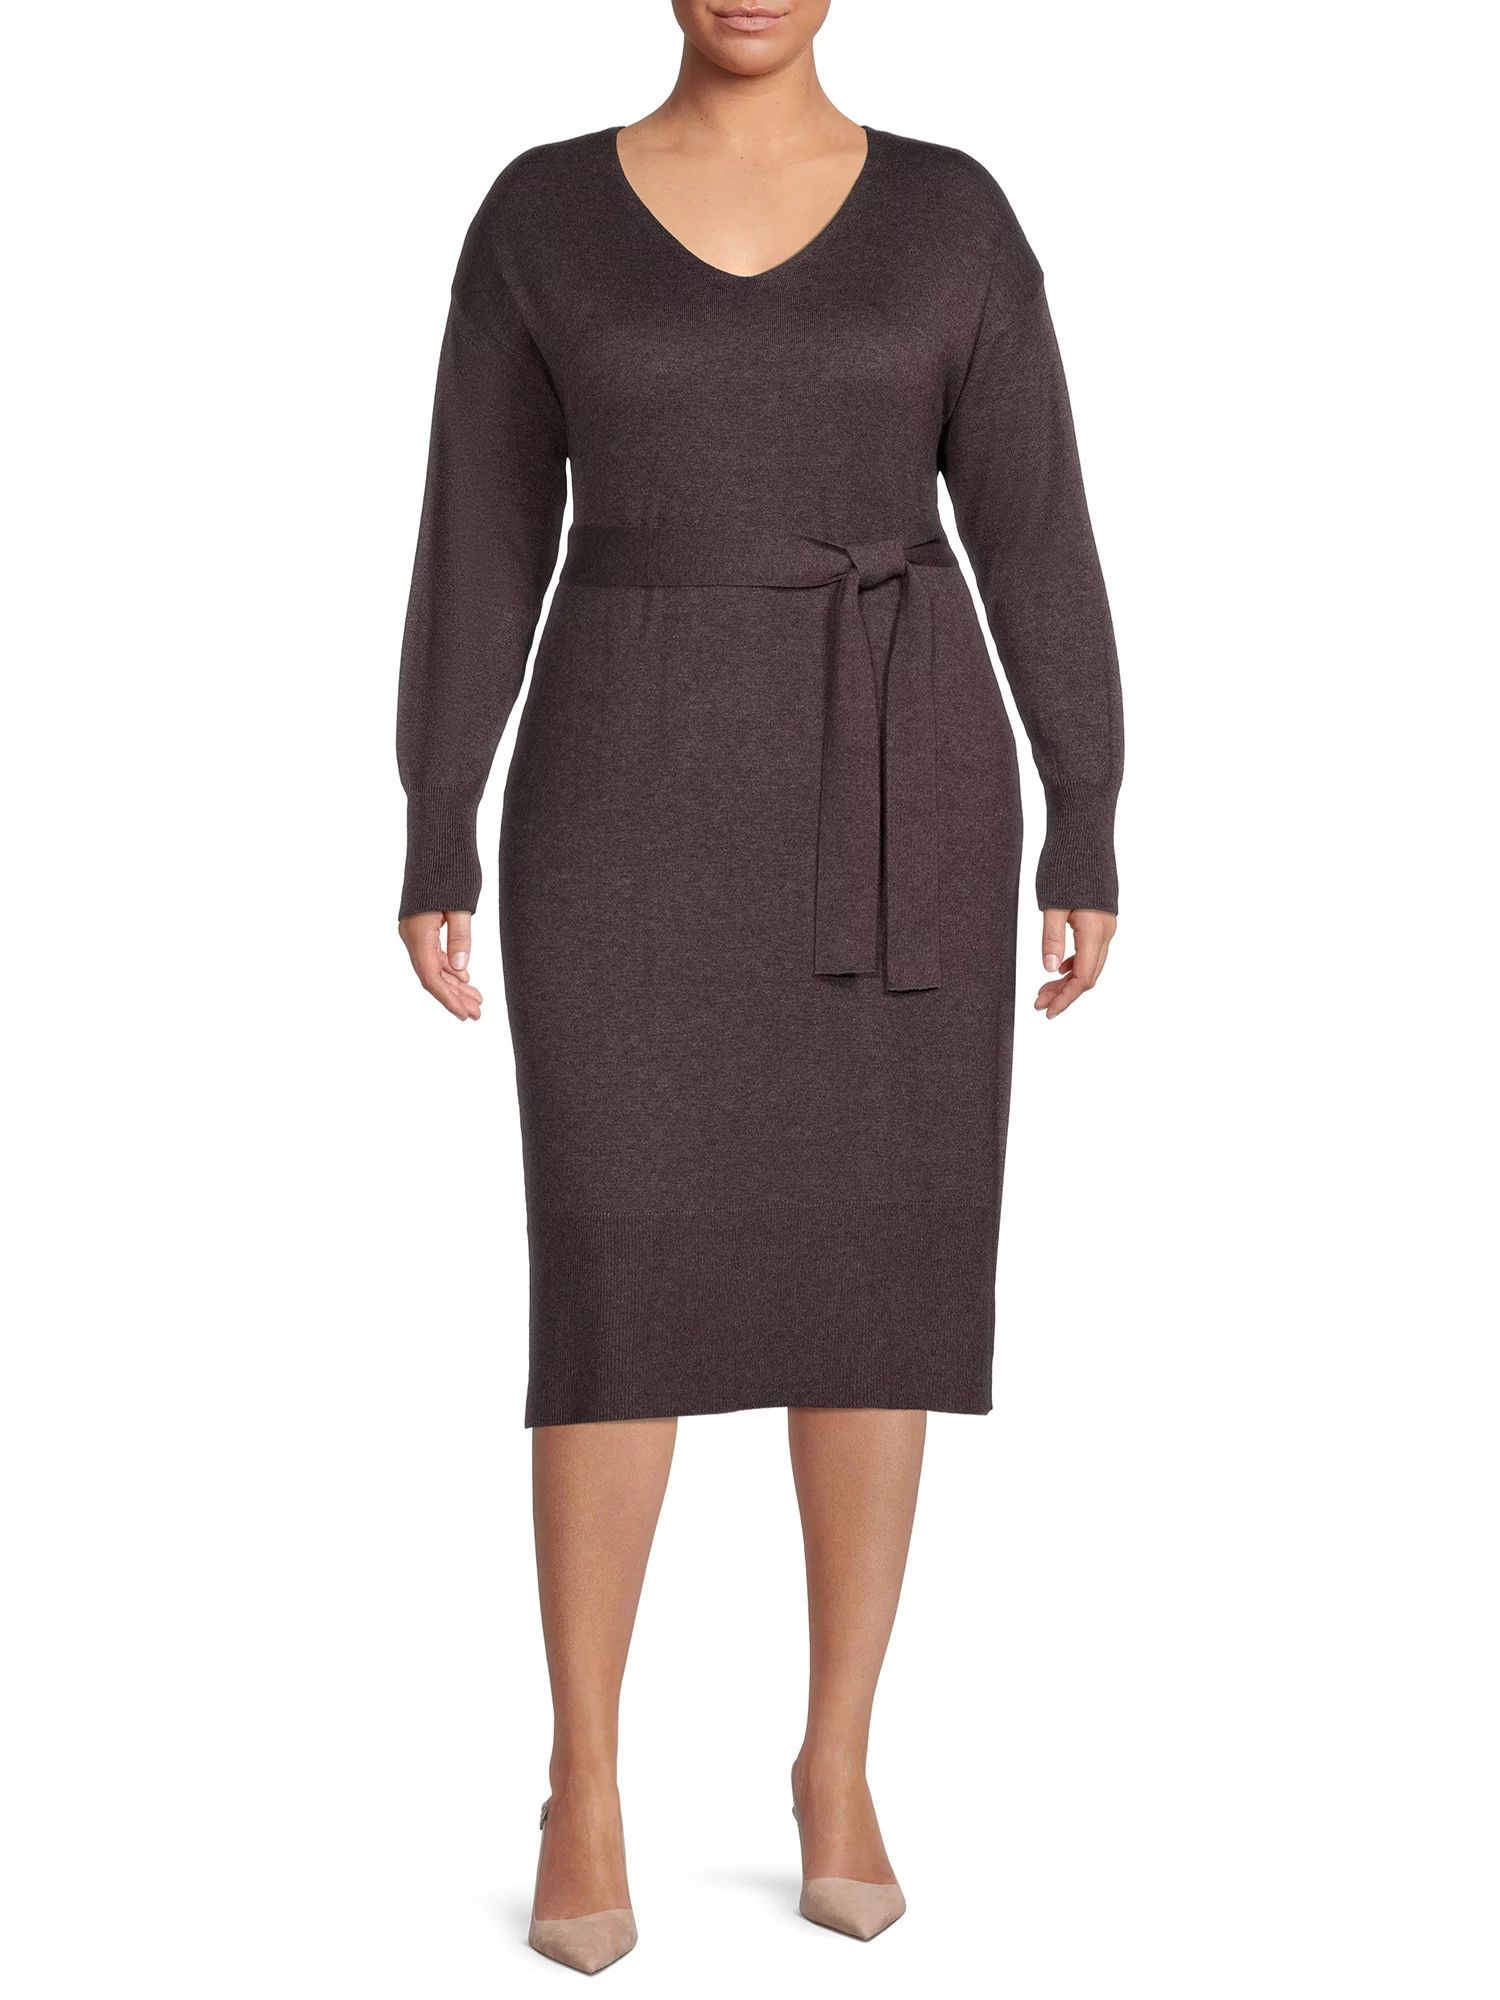 Terra & Sky Women's Plus Size Belted Sweater Dress - Walmart.com | Walmart (US)